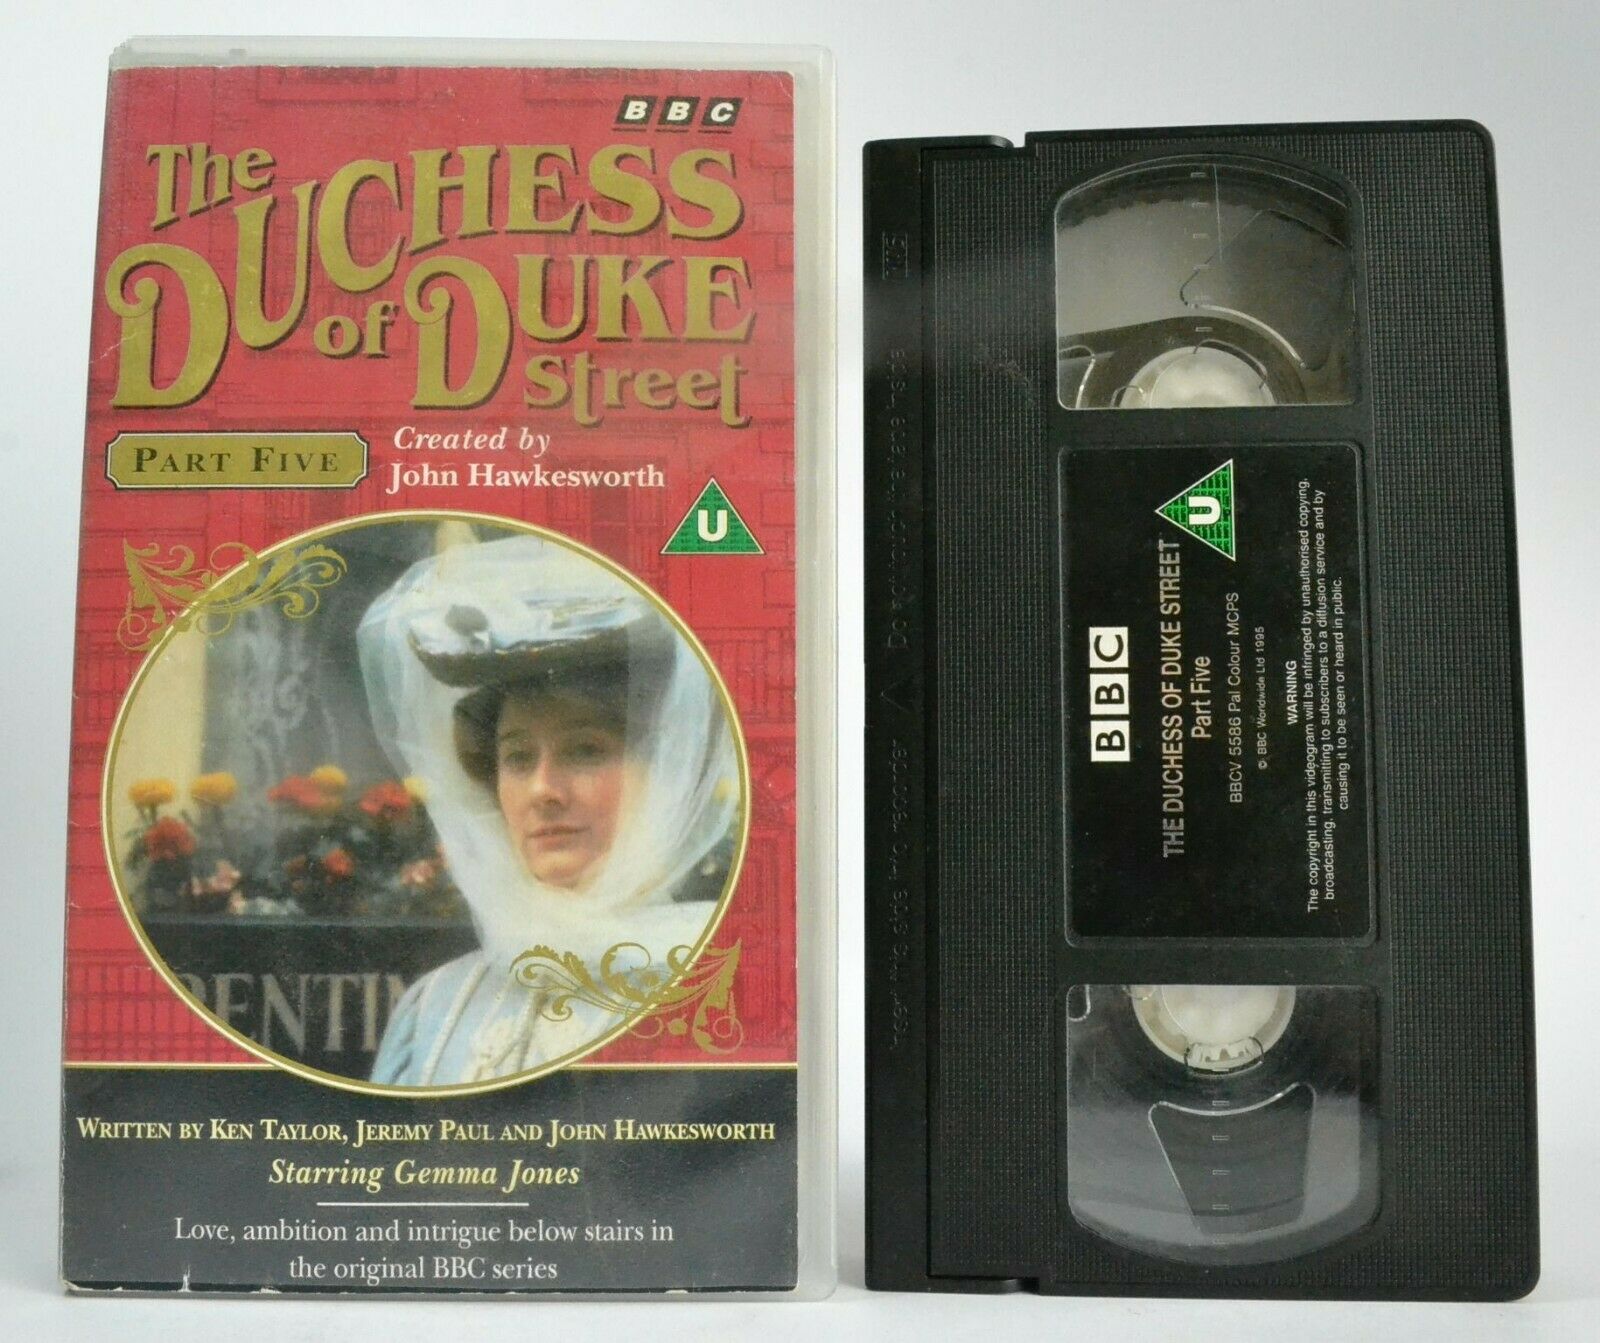 The Duchess Of Duke Street (Part 5) BBC T.V. Series - Drama - Gemma Jones - VHS-